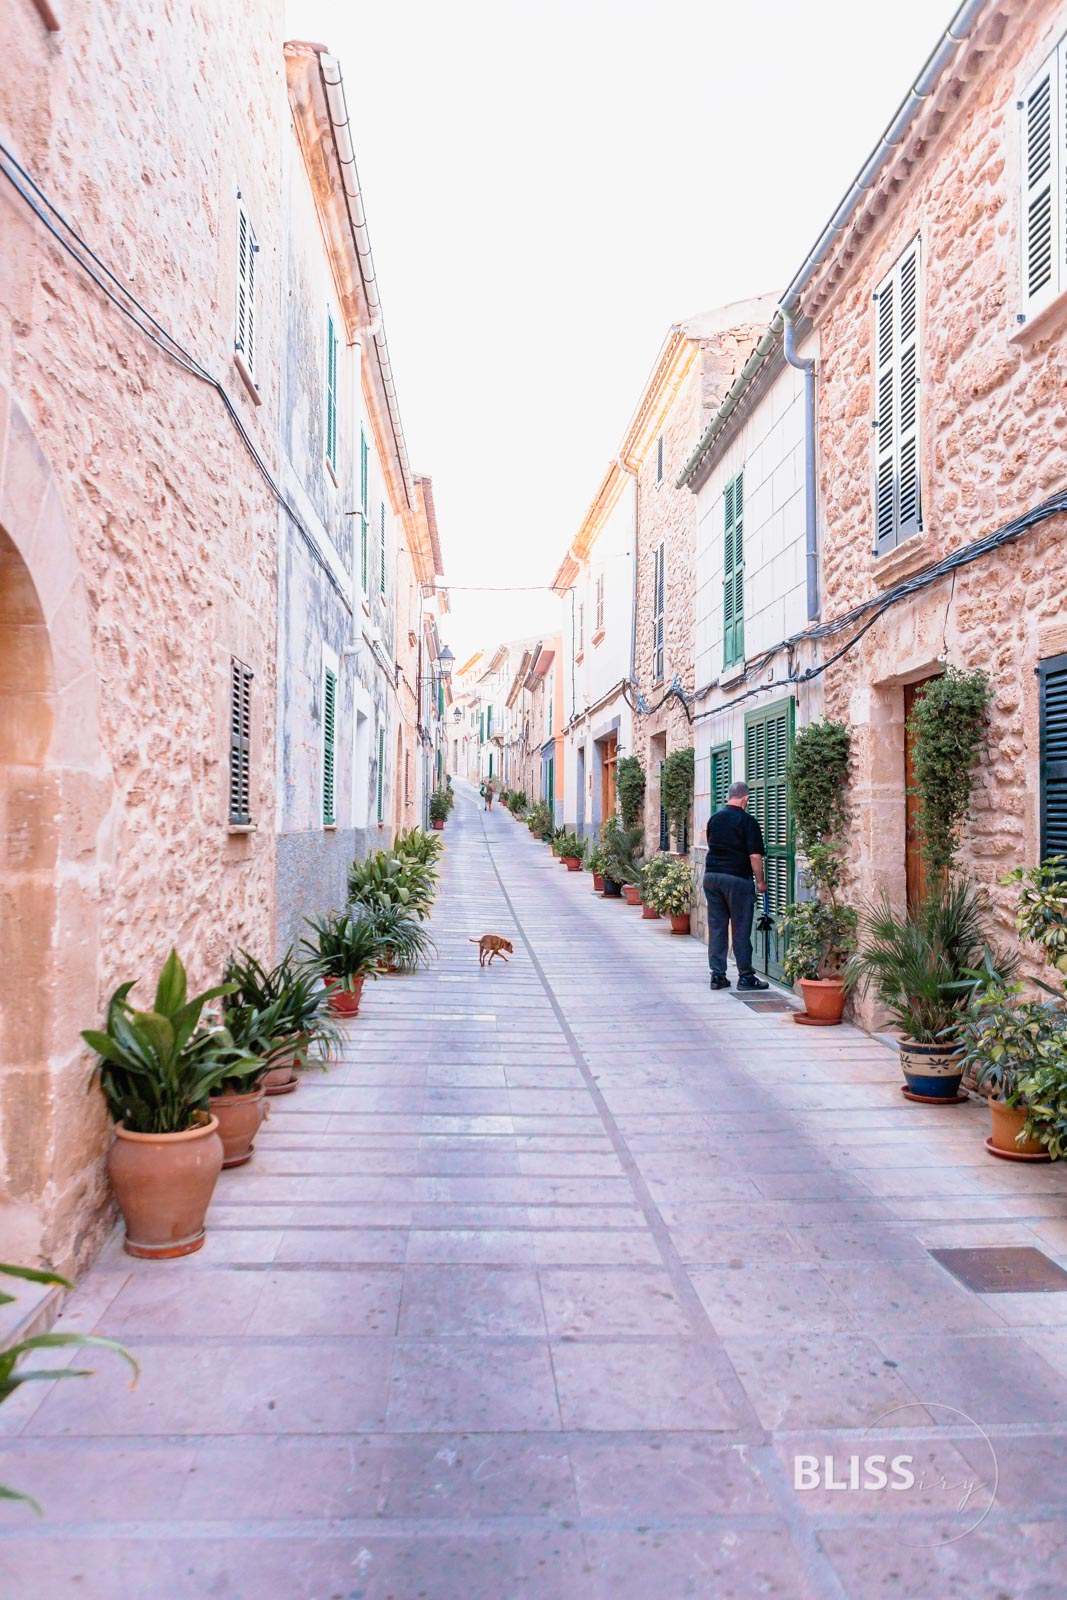 Alcudia auf Mallorca - historische Altstadt und modernes Leben - kleine Gassen in Spanien